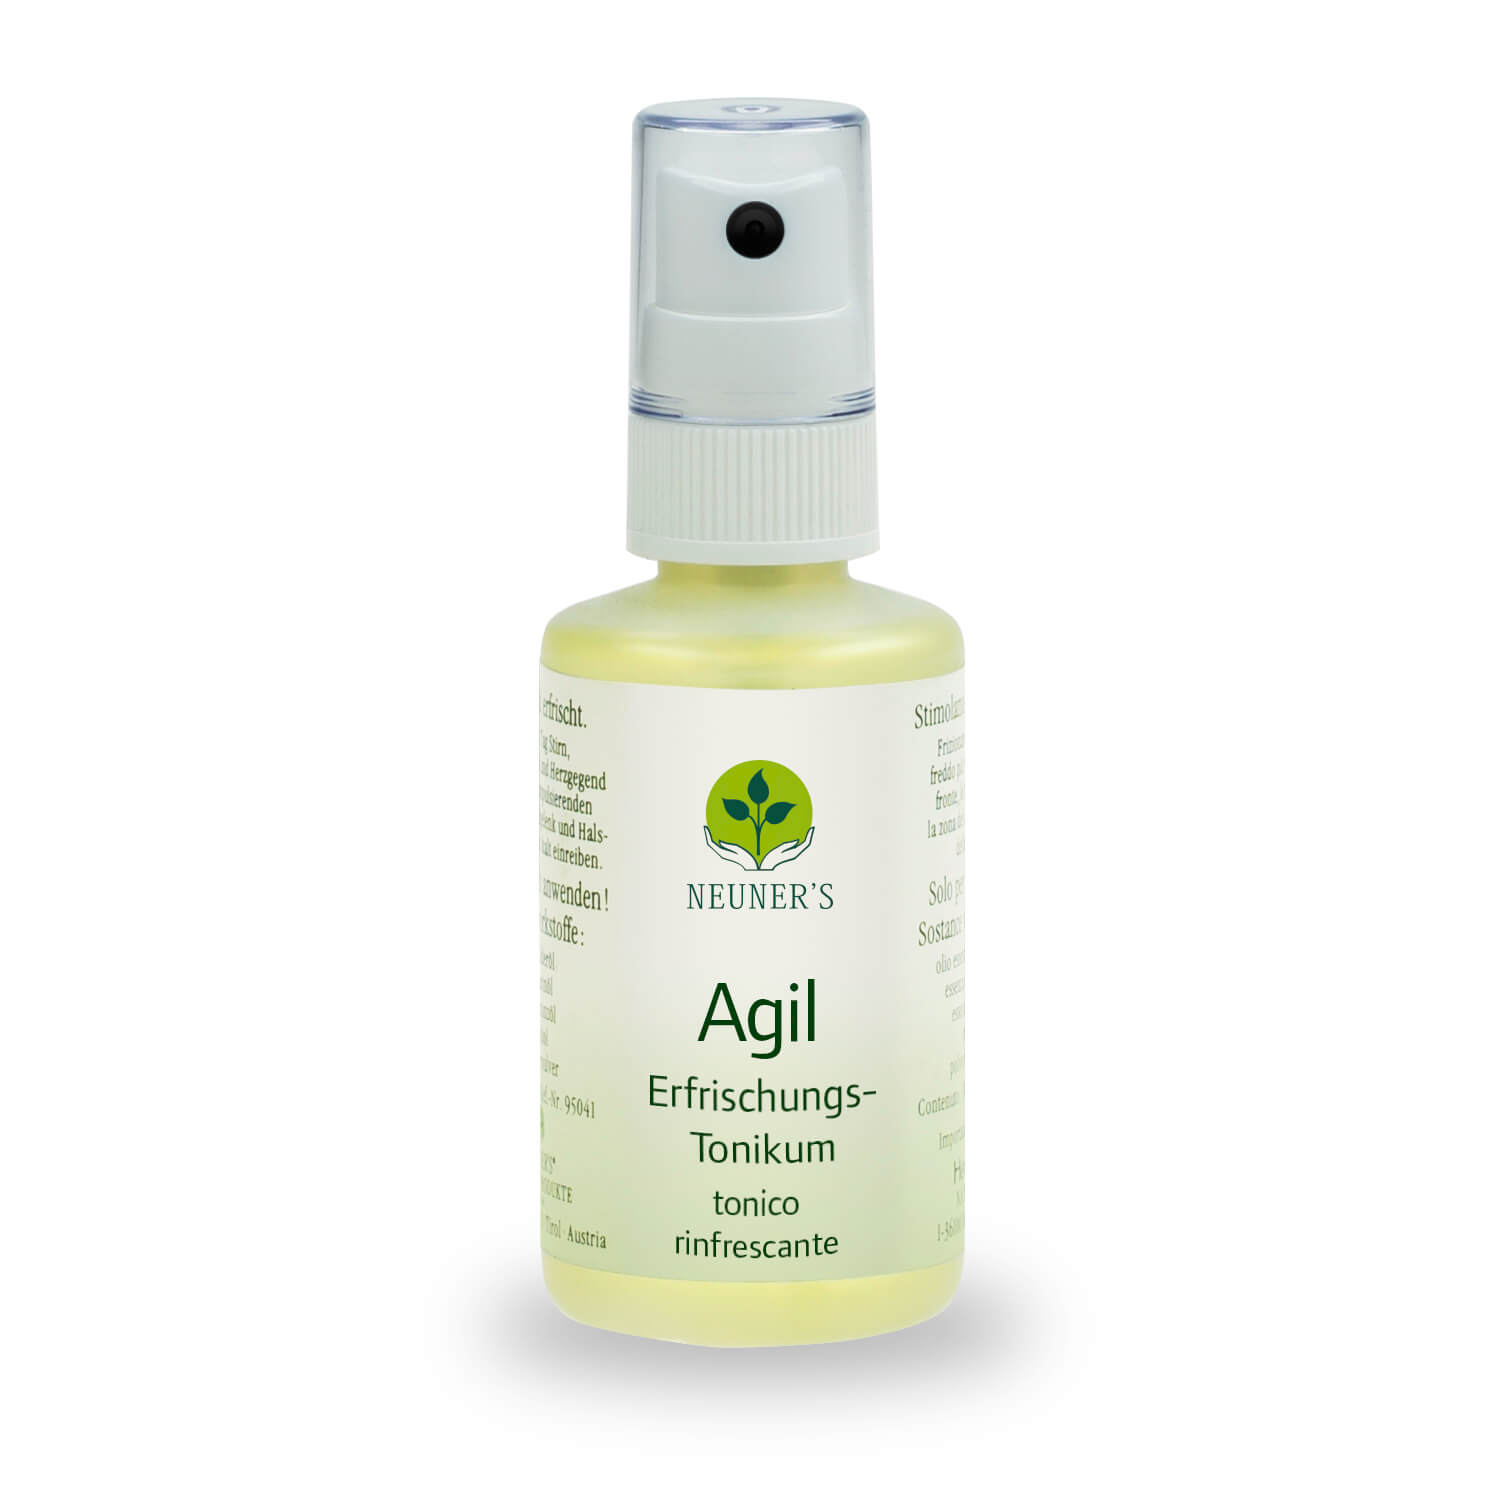 Agil Spray